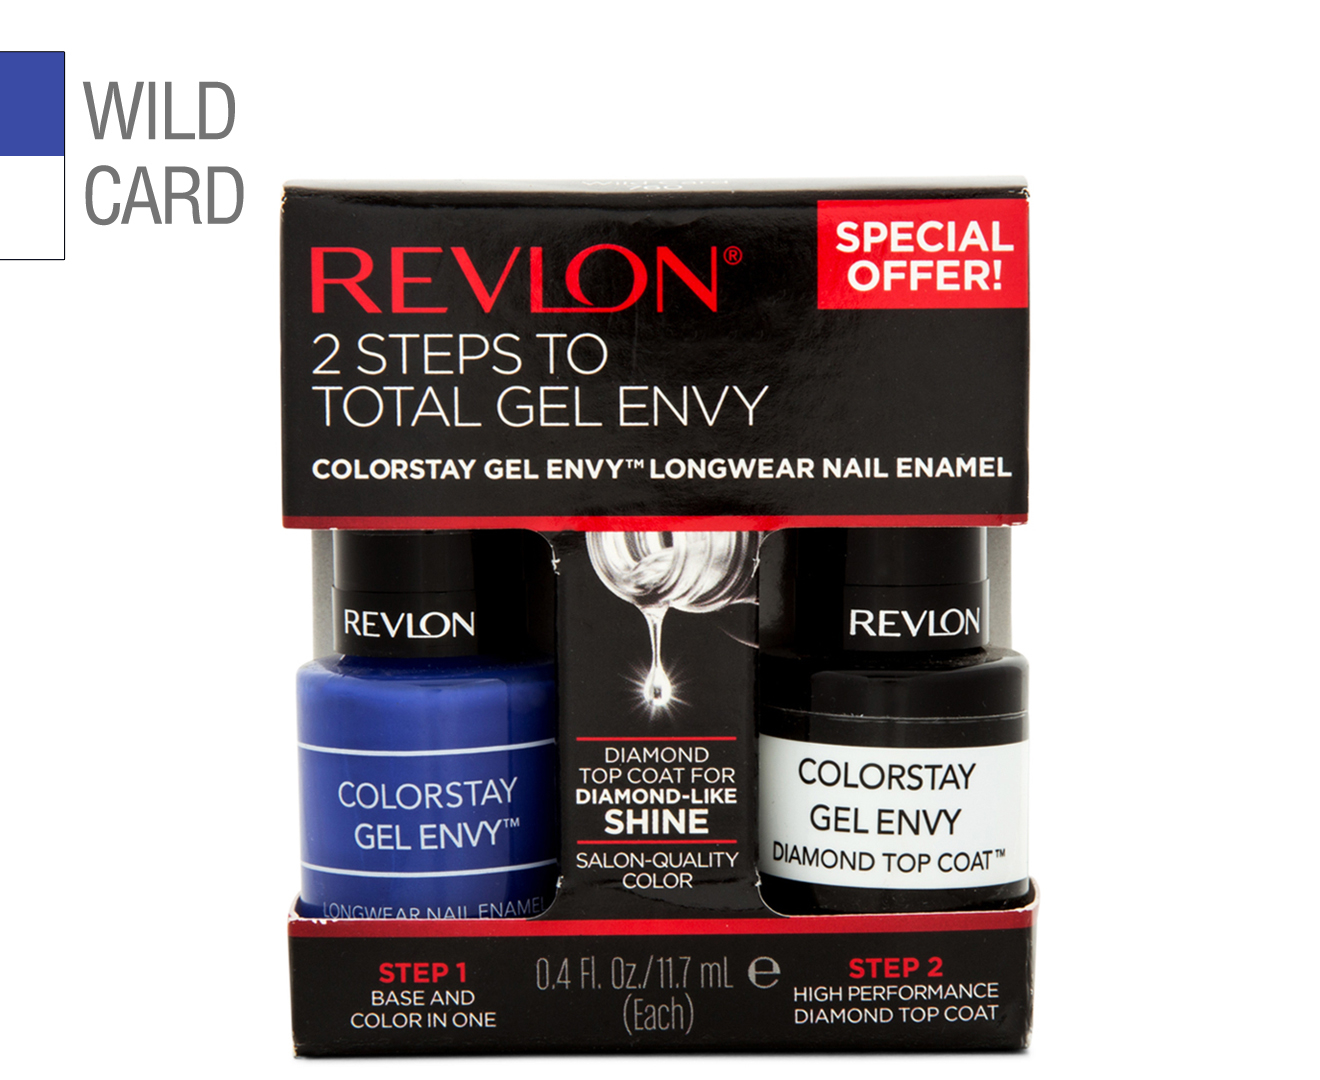 6. Revlon ColorStay Gel Envy in "Wild Card" - wide 1